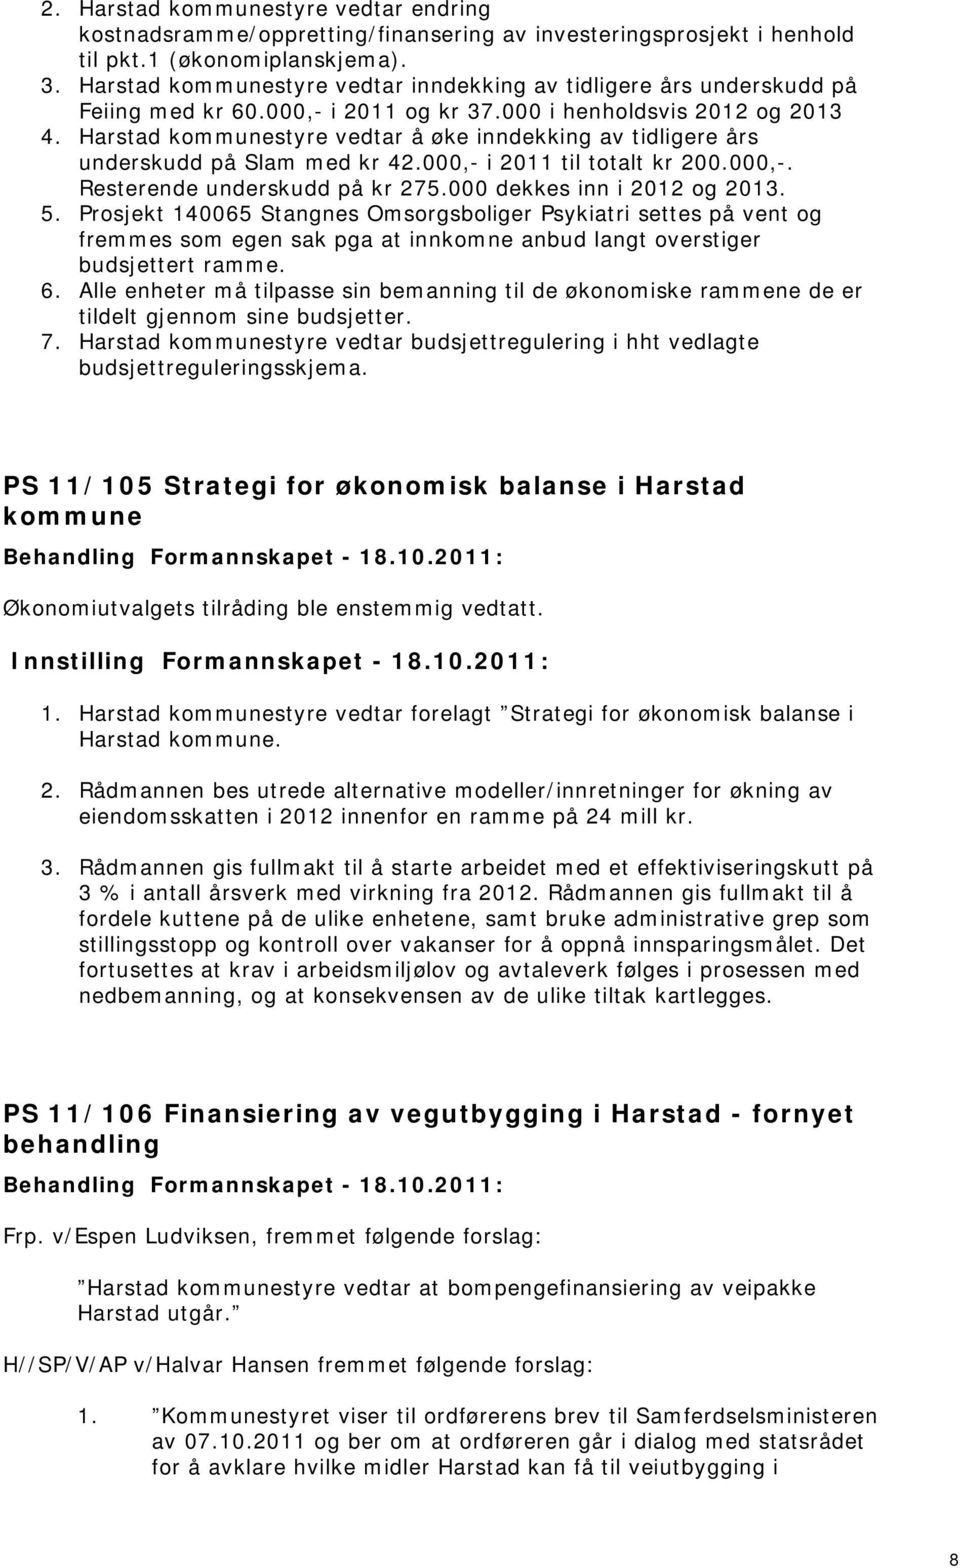 Harstad kommunestyre vedtar å øke inndekking av tidligere års underskudd på Slam med kr 4.000, i 011 til totalt kr 00.000,. Resterende underskudd på kr 75.000 dekkes inn i 01 og 013. 5.